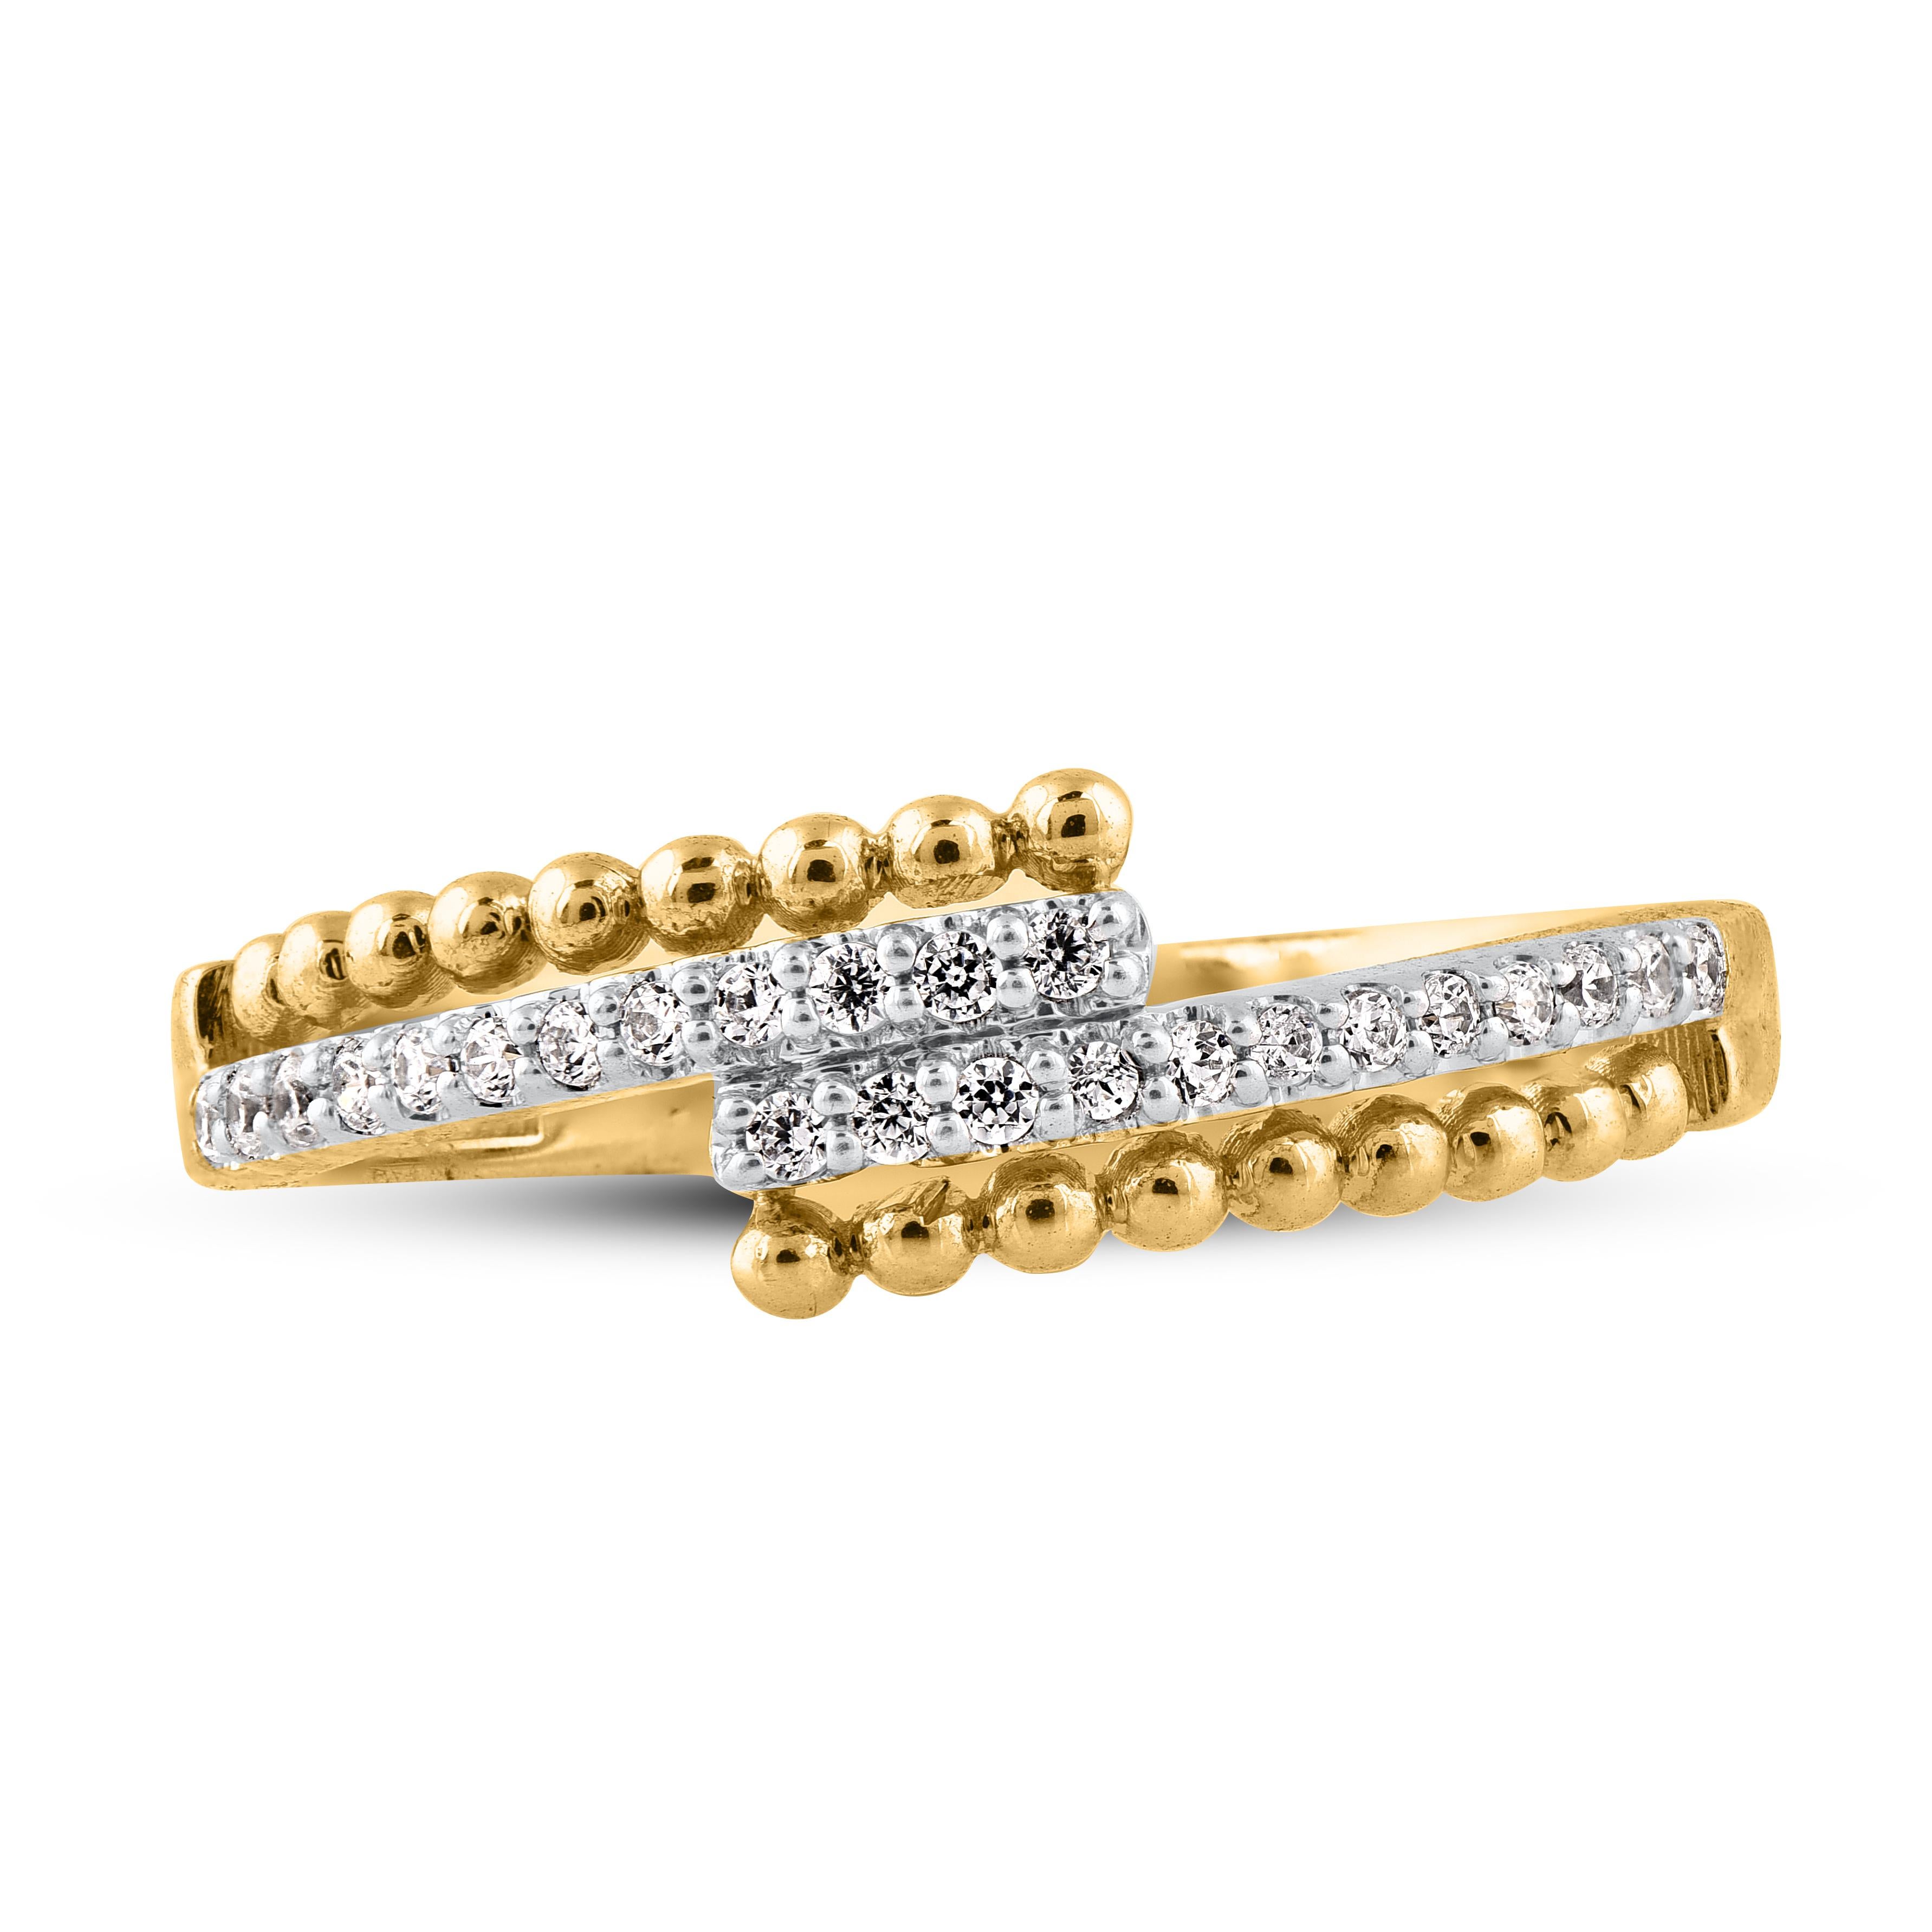 Dieser funkelnde diamantene Bypass-Ehering wird sicher sofort zum Lieblingsstück und zelebriert Ihre Romanze. Der Ring ist aus 14-karätigem Gold in Weiß-, Rosé- oder Gelbgold gefertigt und verfügt über 24 runde Brillanten, die in Zacken gefasst